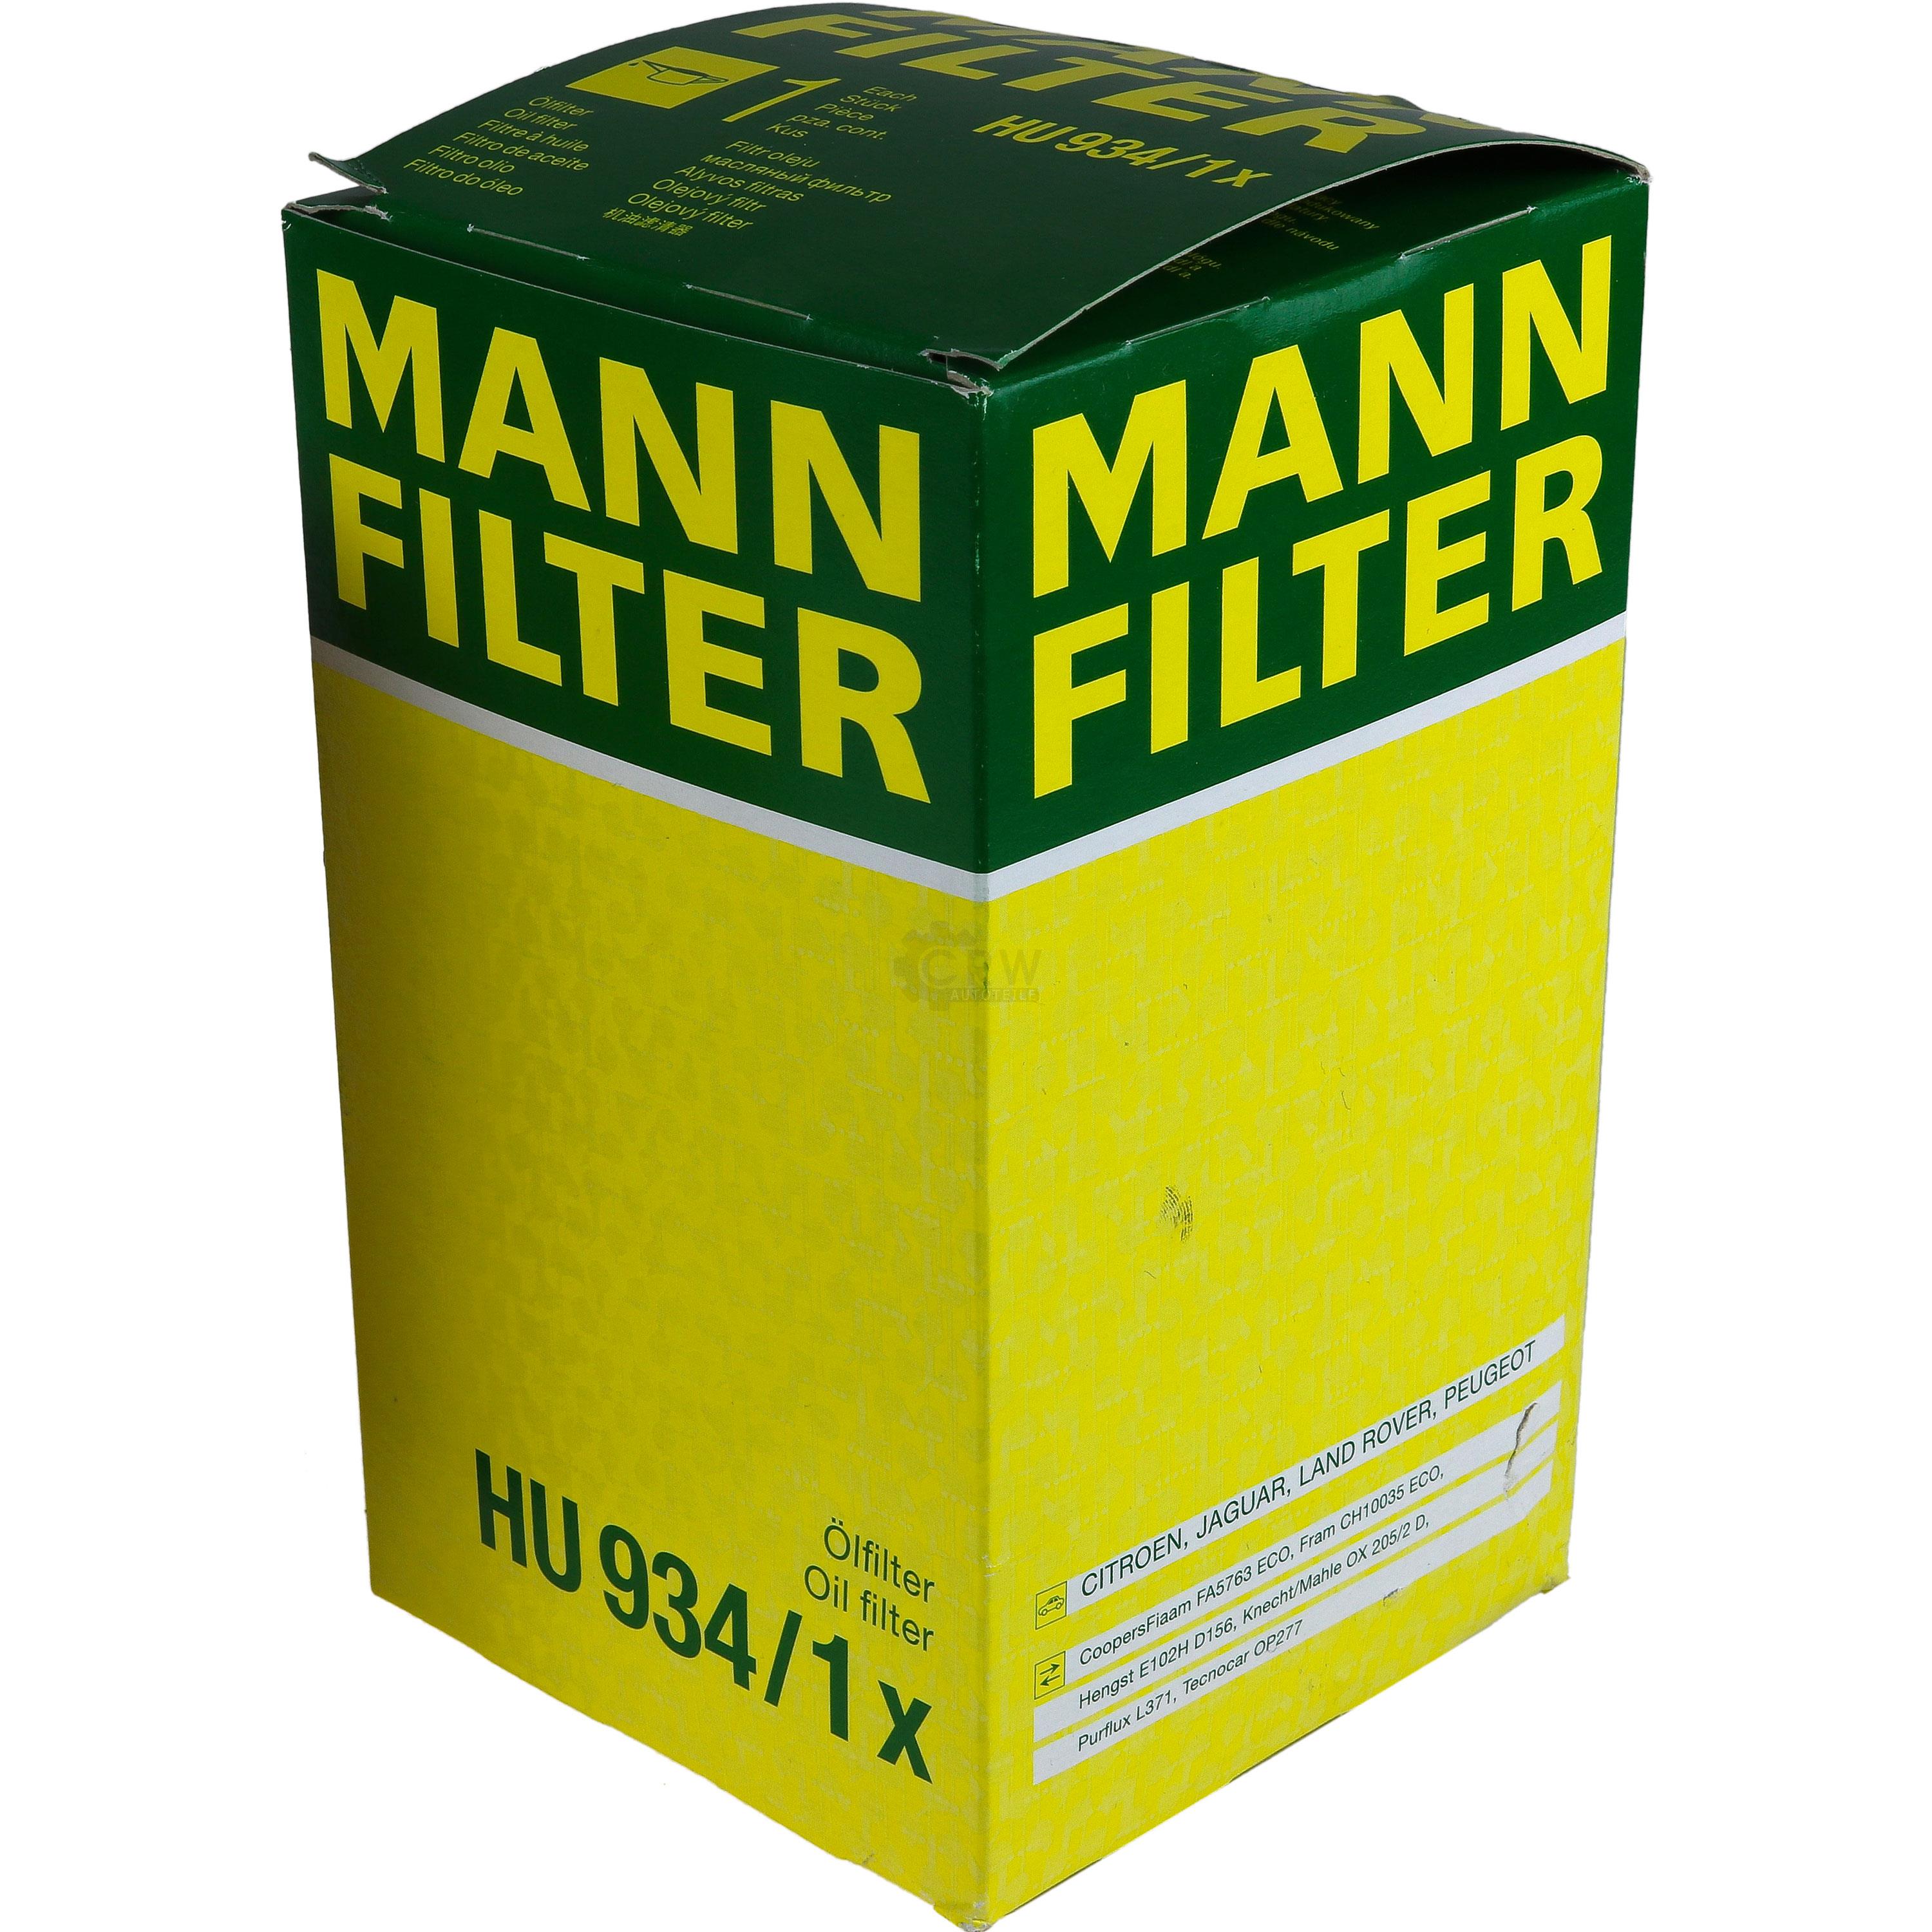 MANN-FILTER Ölfilter HU 934/1 x Oil Filter